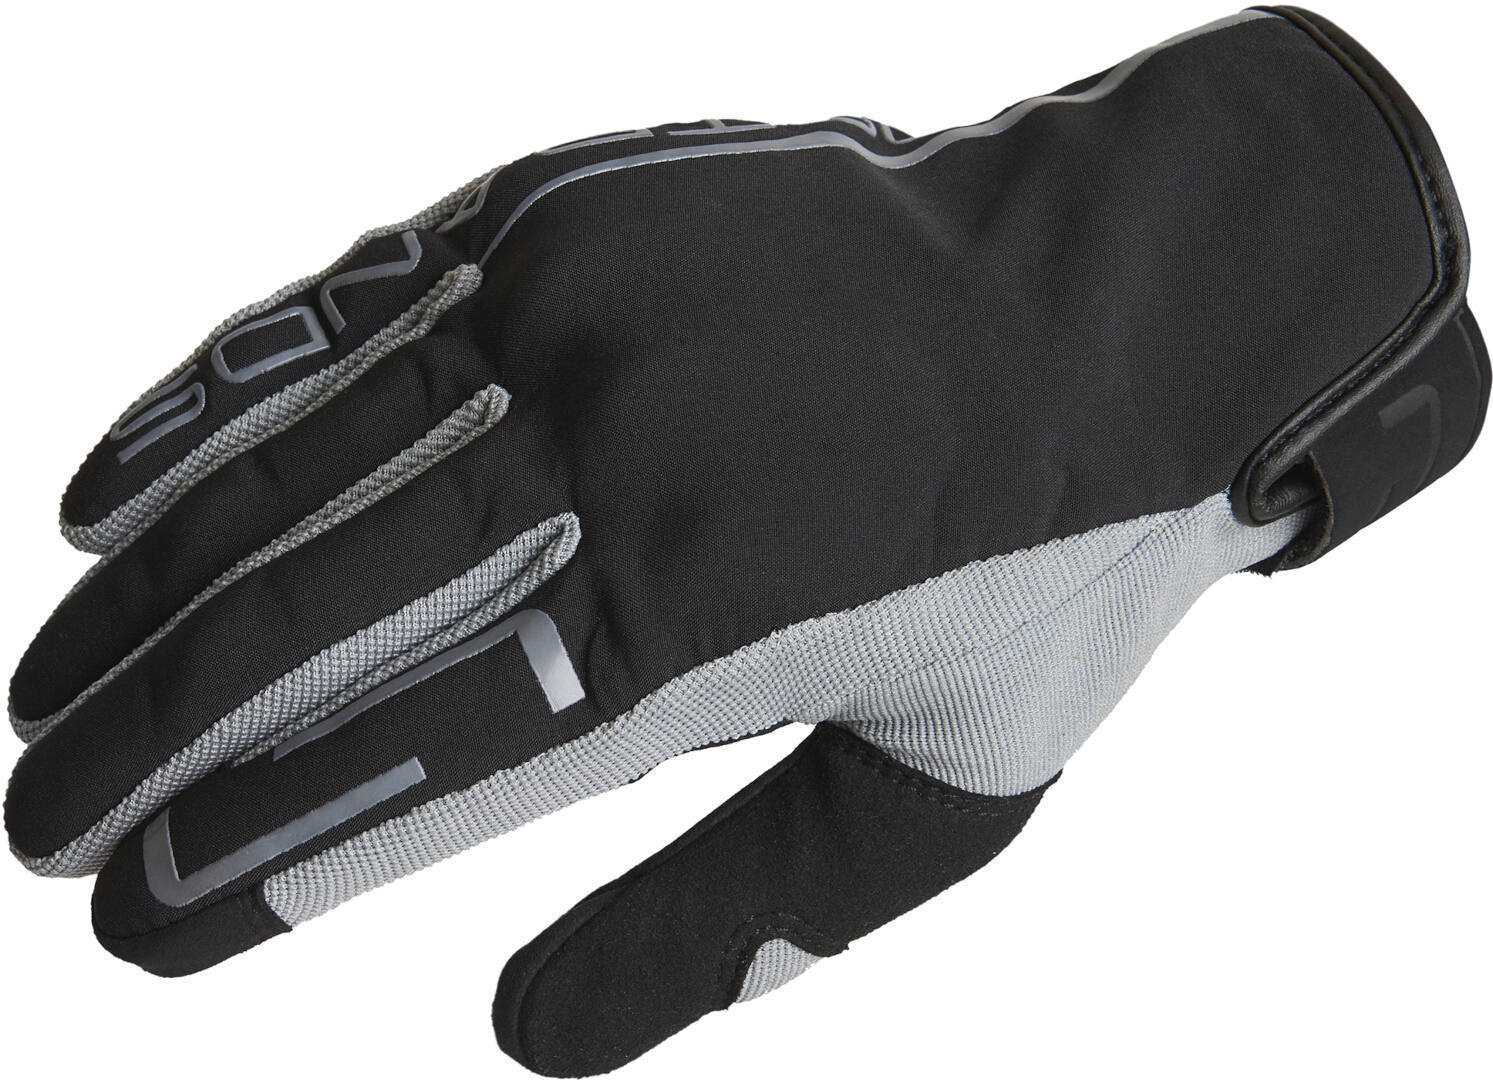 Lindstrands Eke Motorcycle Gloves, black-grey, Size S M, black-grey, Size S M